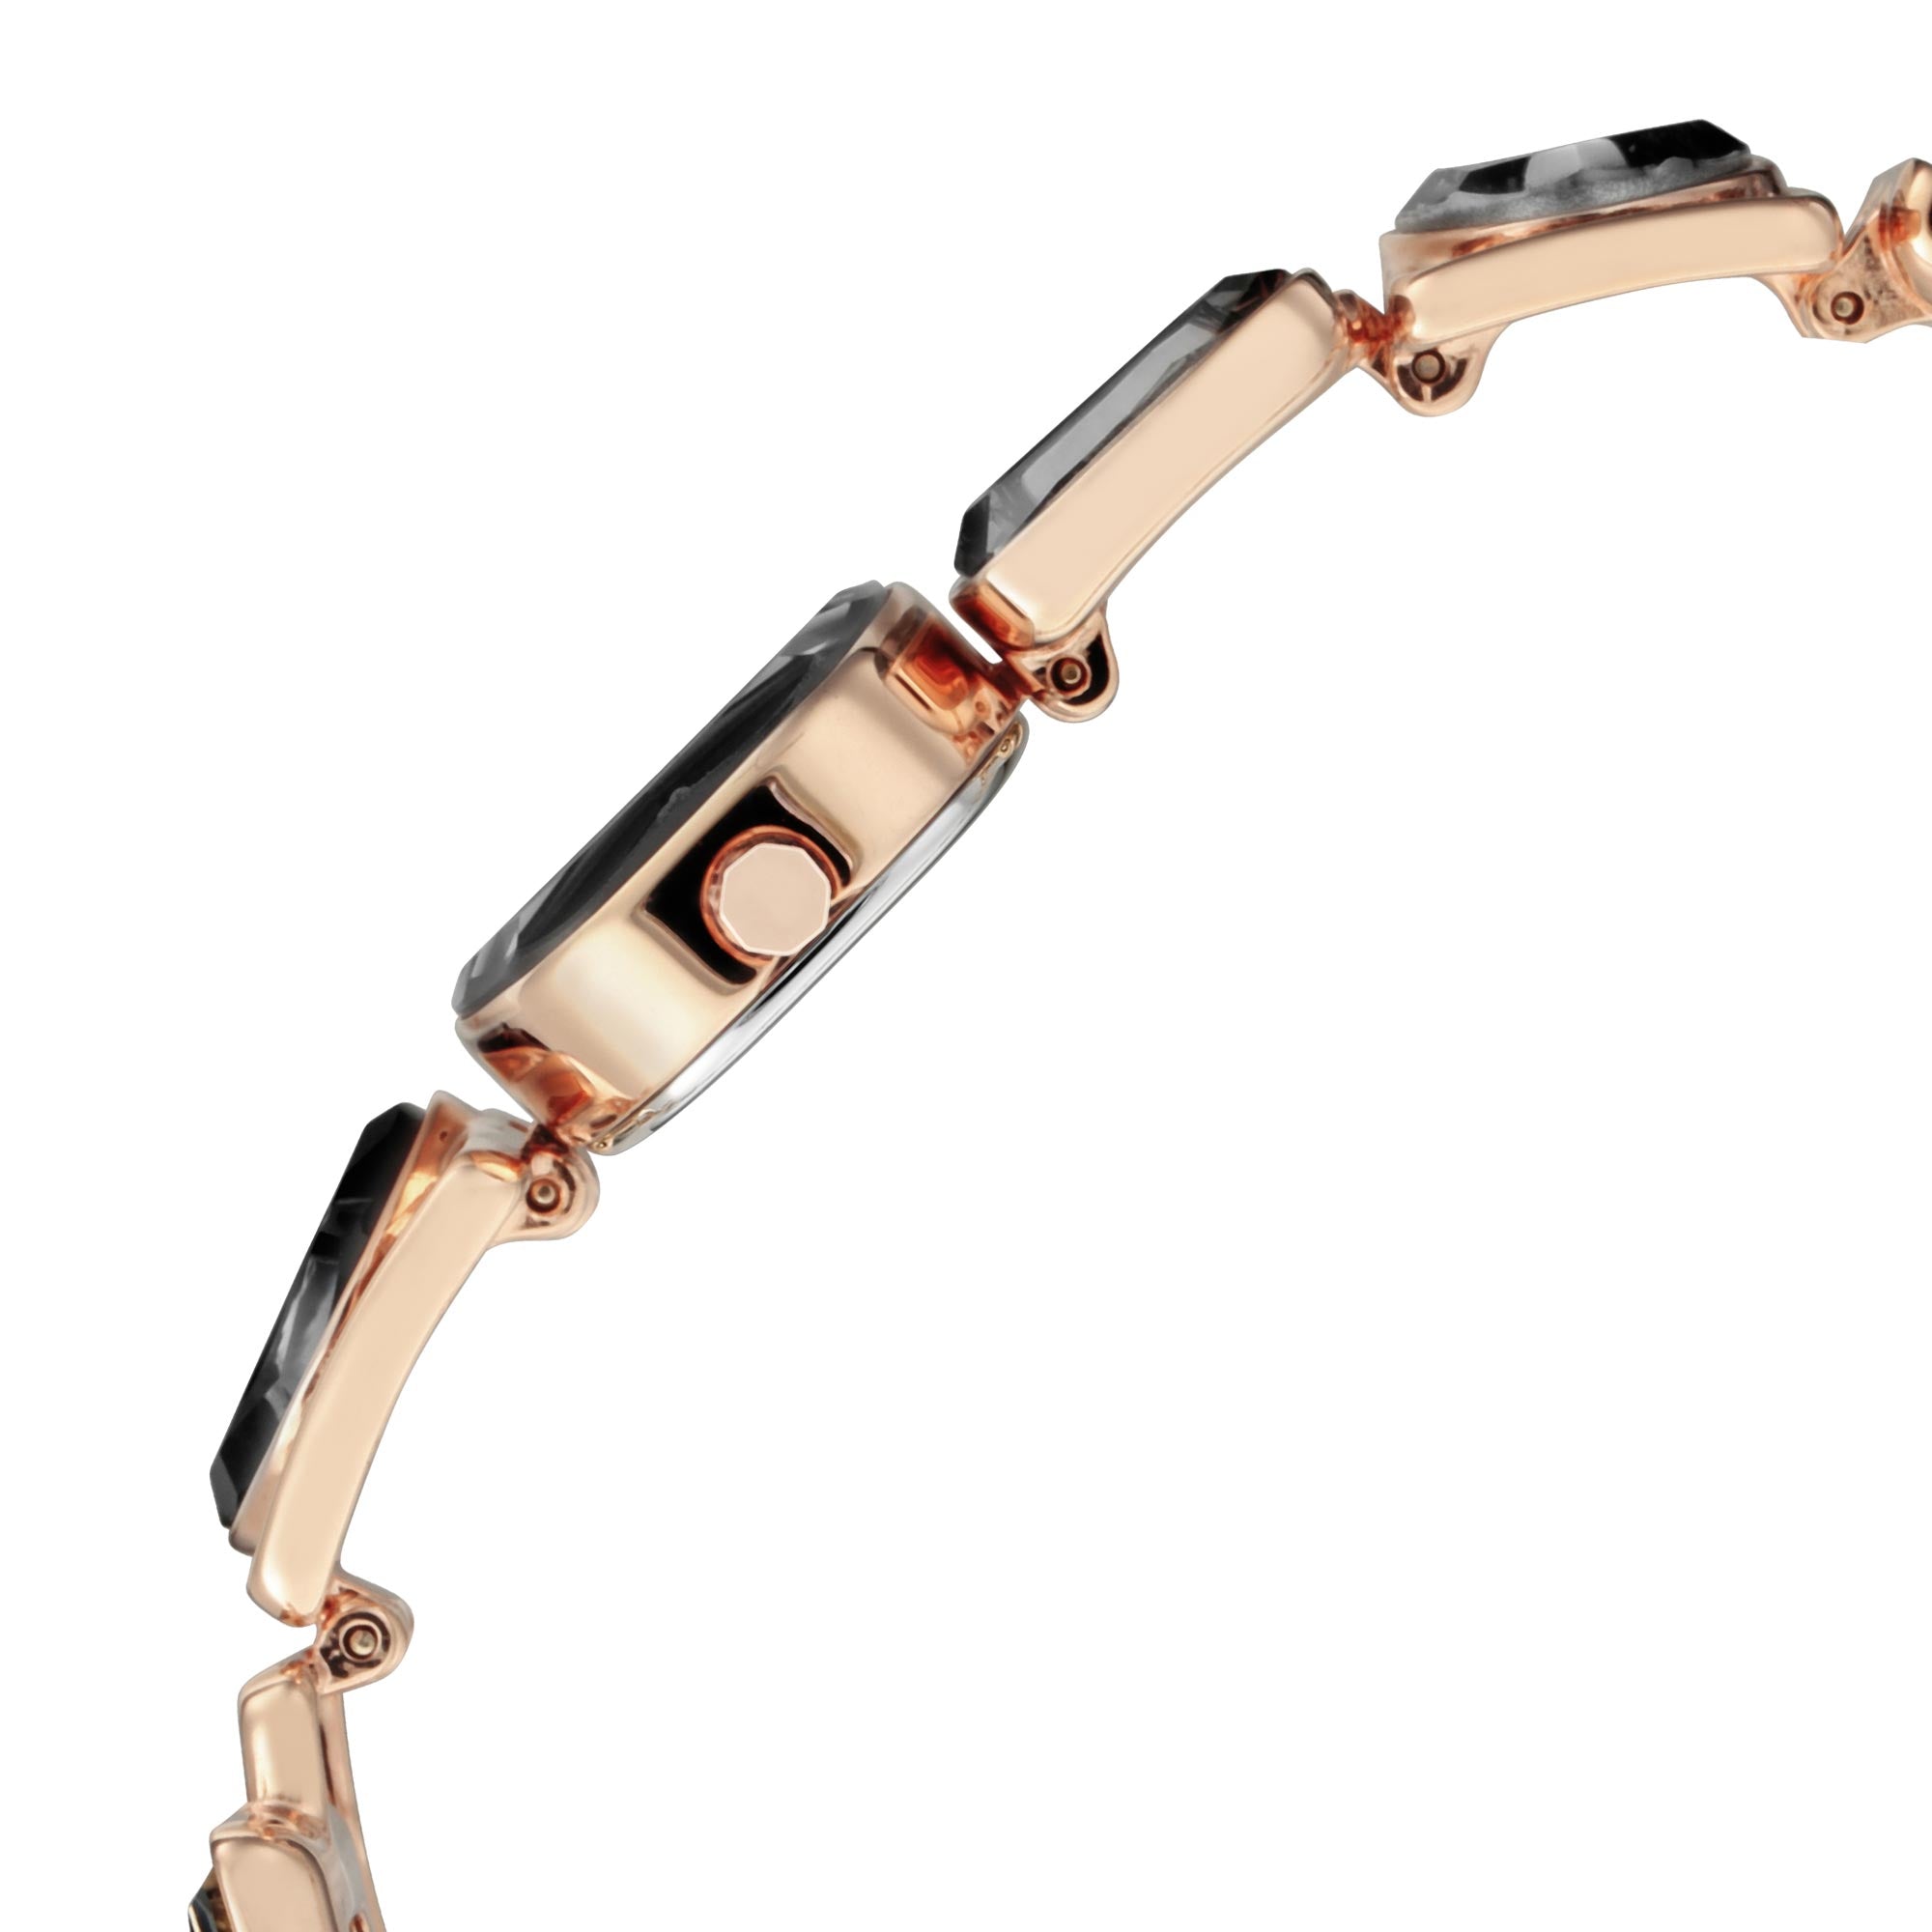 Đồng hồ nữ TITAN Facets 95118WM01 dây kim loại - Vàng hồng